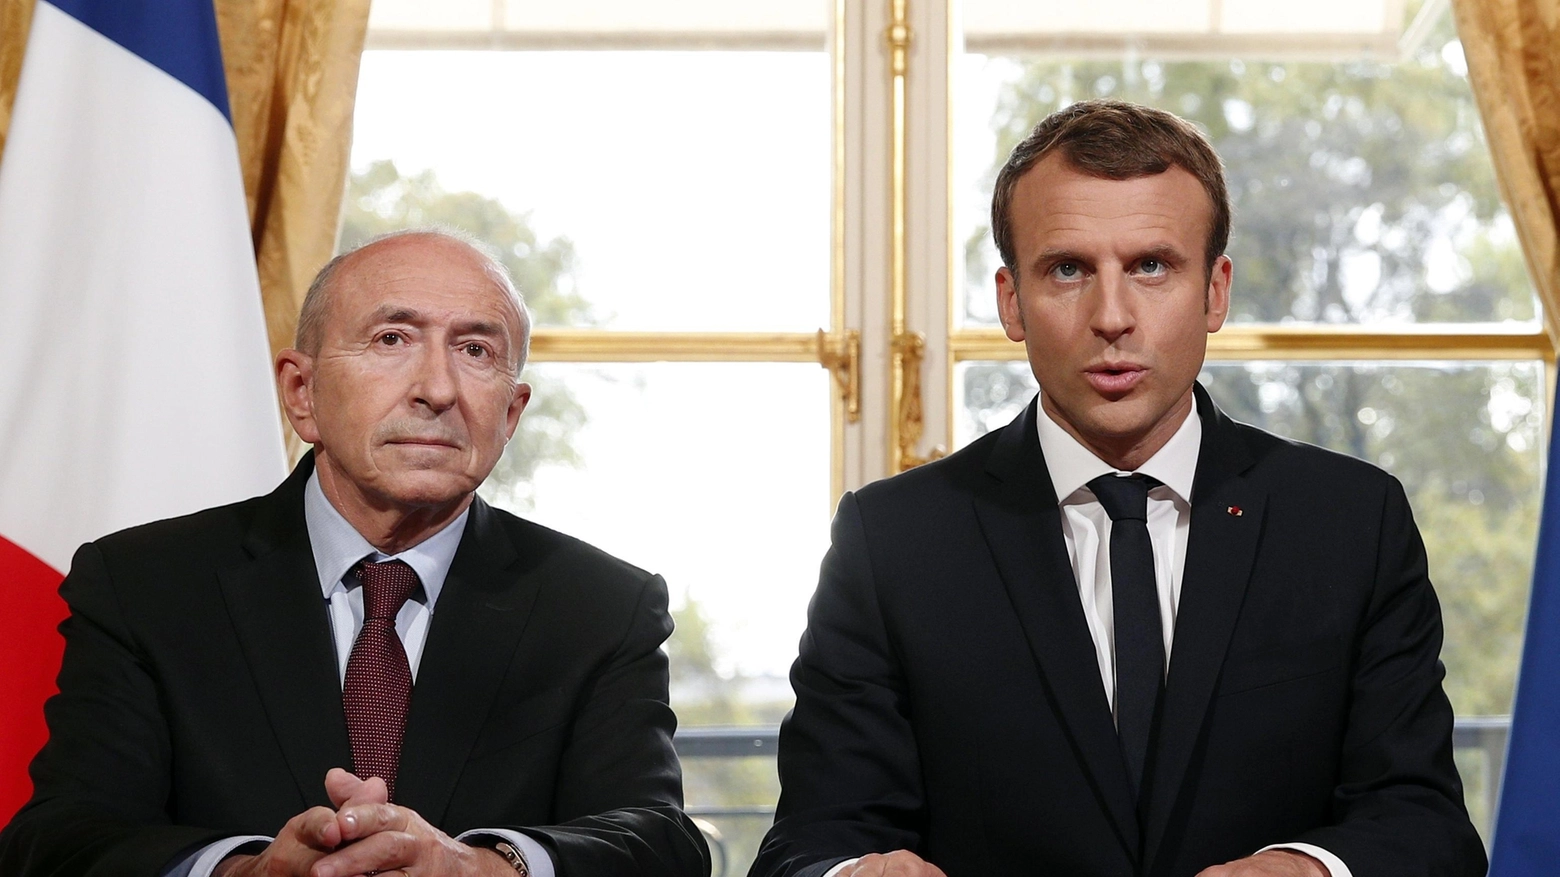 Il ministro dell'Interno Collomb e Emmanuel Macron (Ansa)